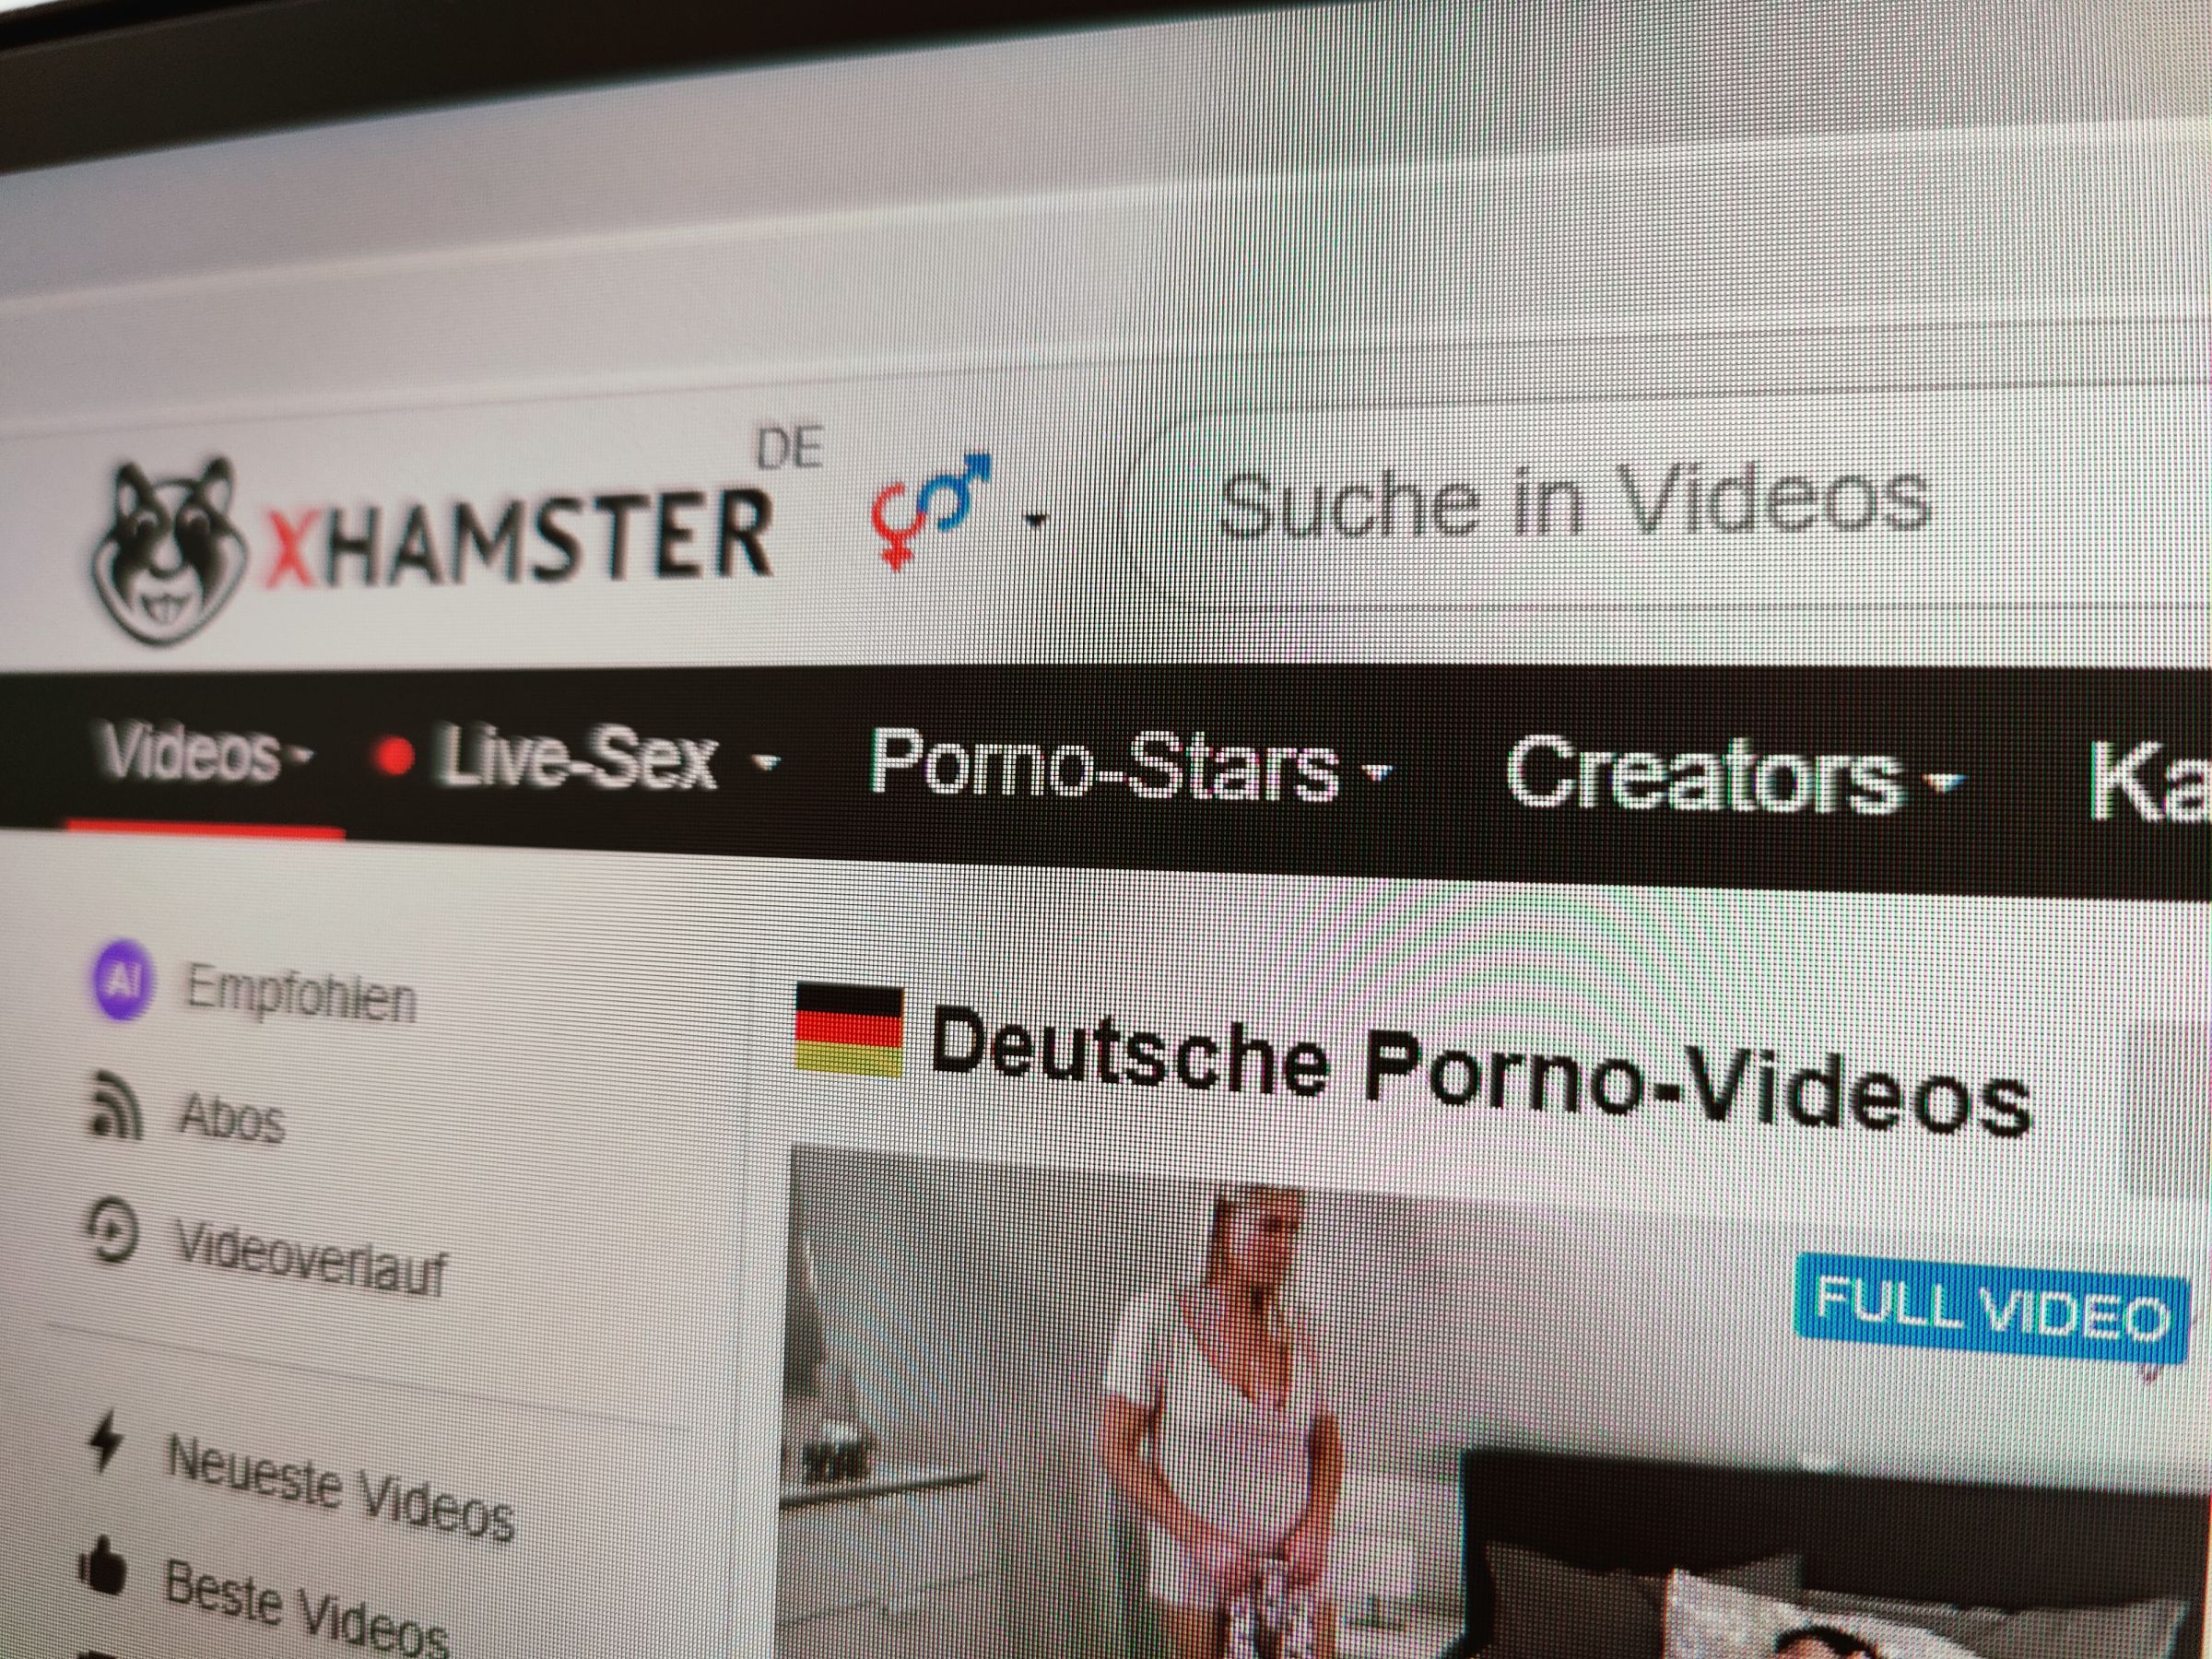 #xHamster-Sperre ist Werbung für die Porno-Seite